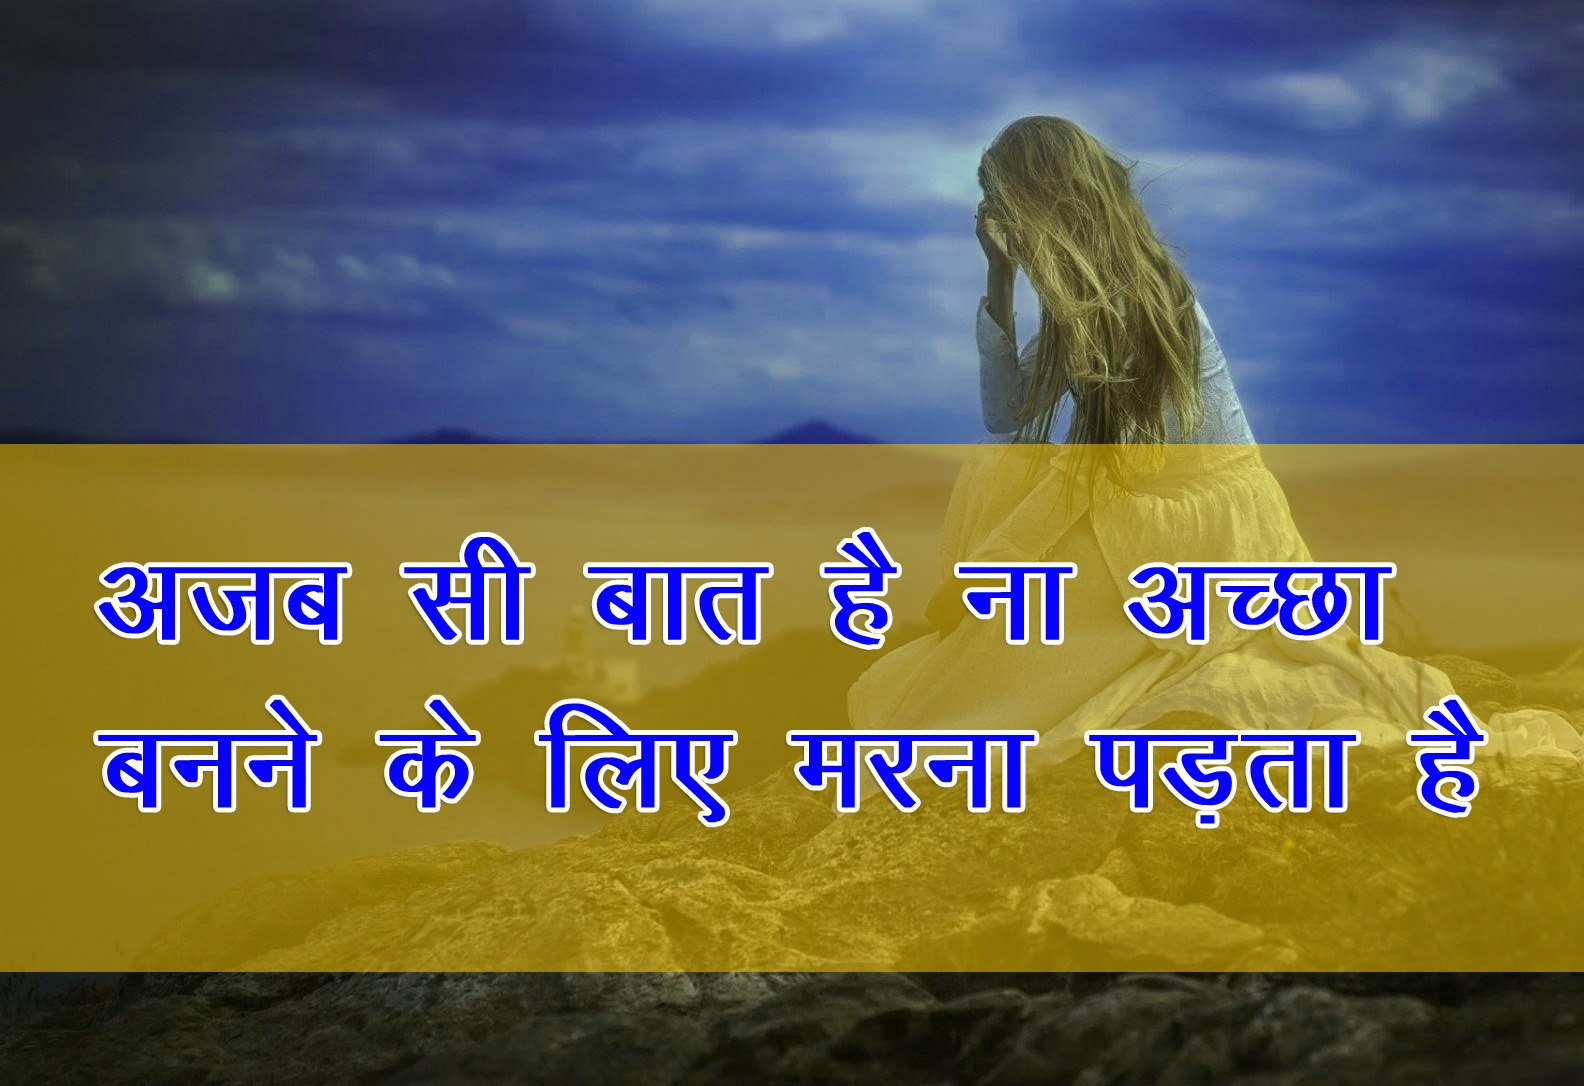 Sad Shayari DP For Girl Download With Image 2021 In Hindi